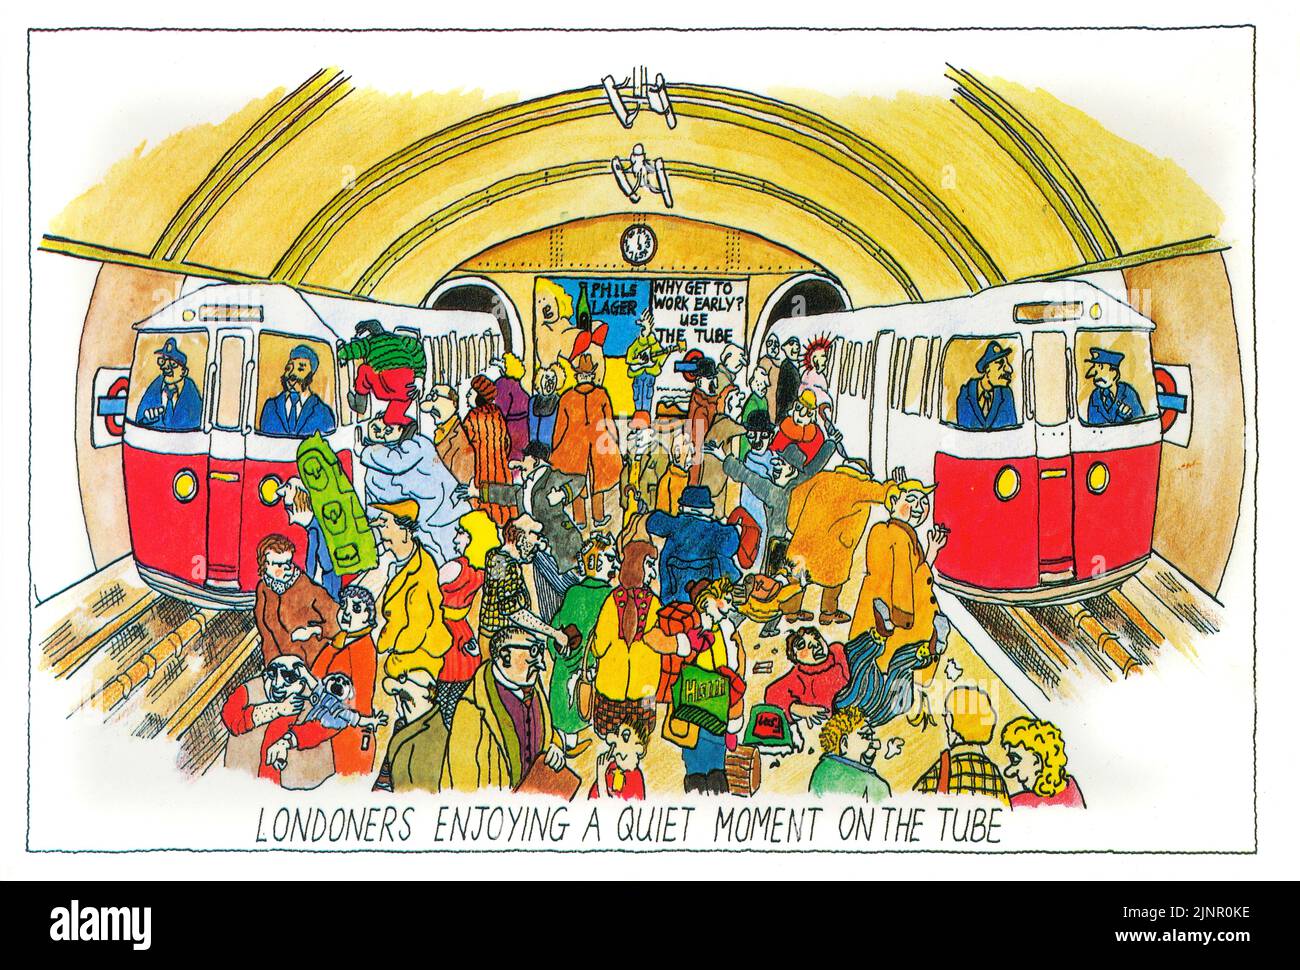 Londinenses disfrutando de un momento tranquilo en el metro. Divertida postal londinense de los años 80 Foto de stock